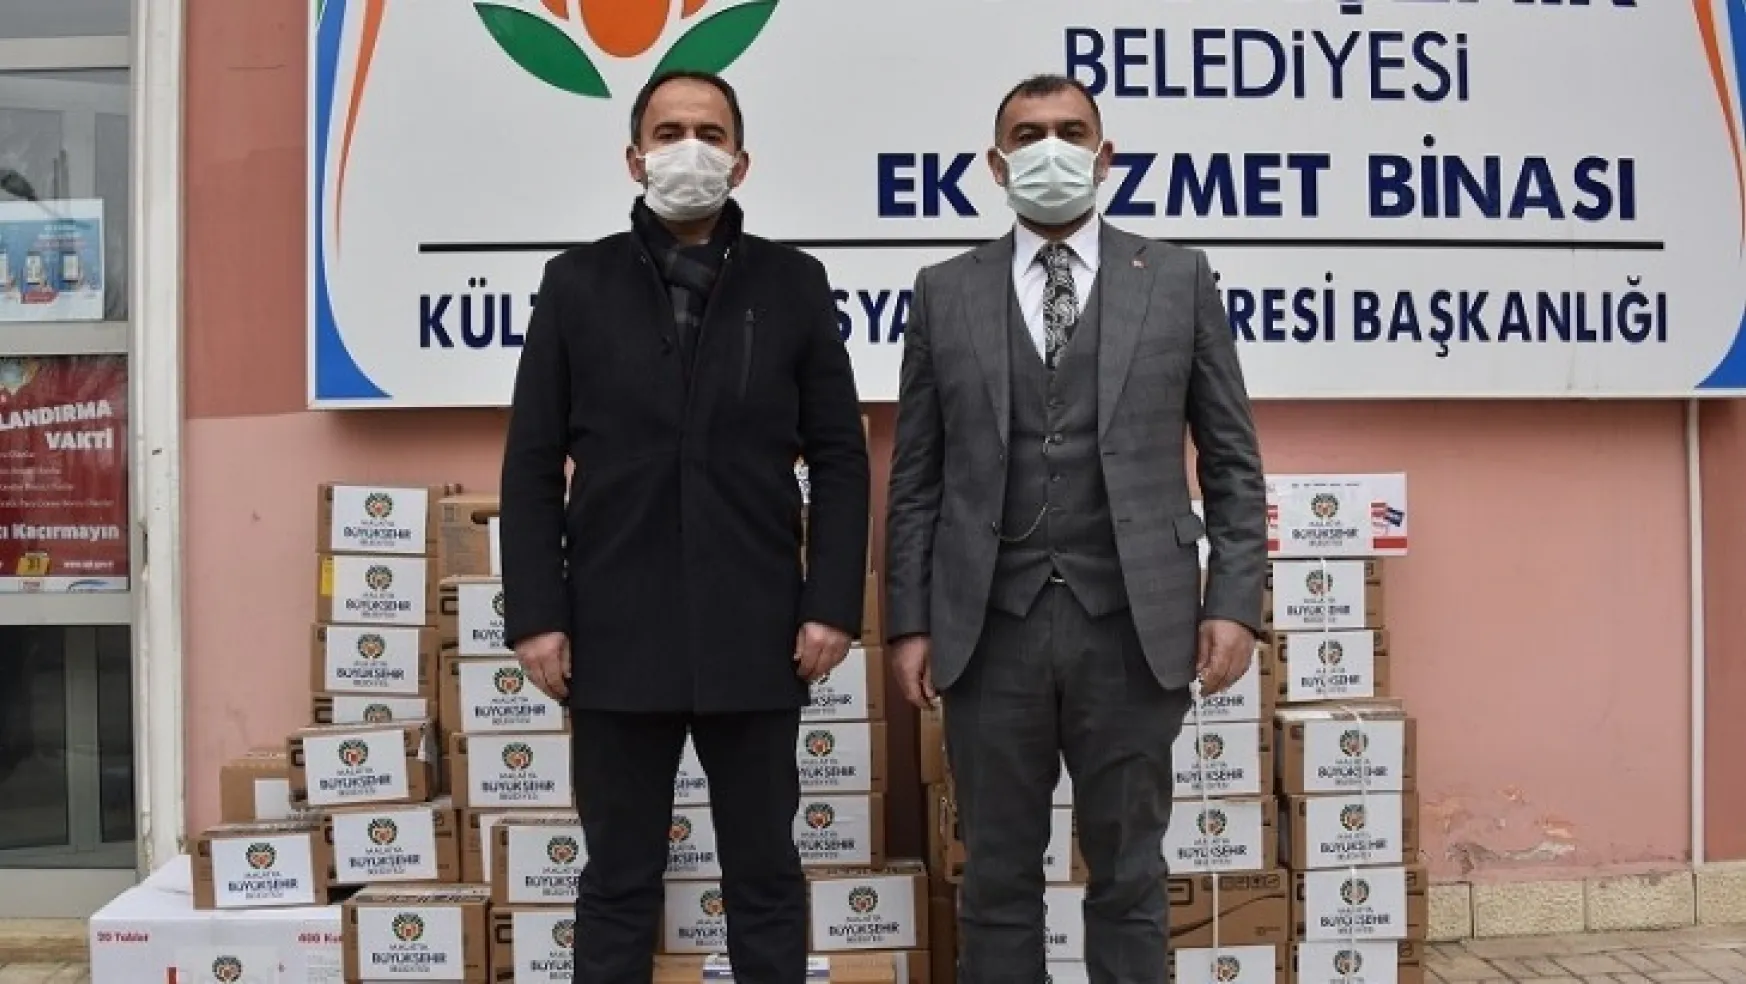 Büyükşehir Belediyesi Bayır Bucak Türkmenleri'ne destek